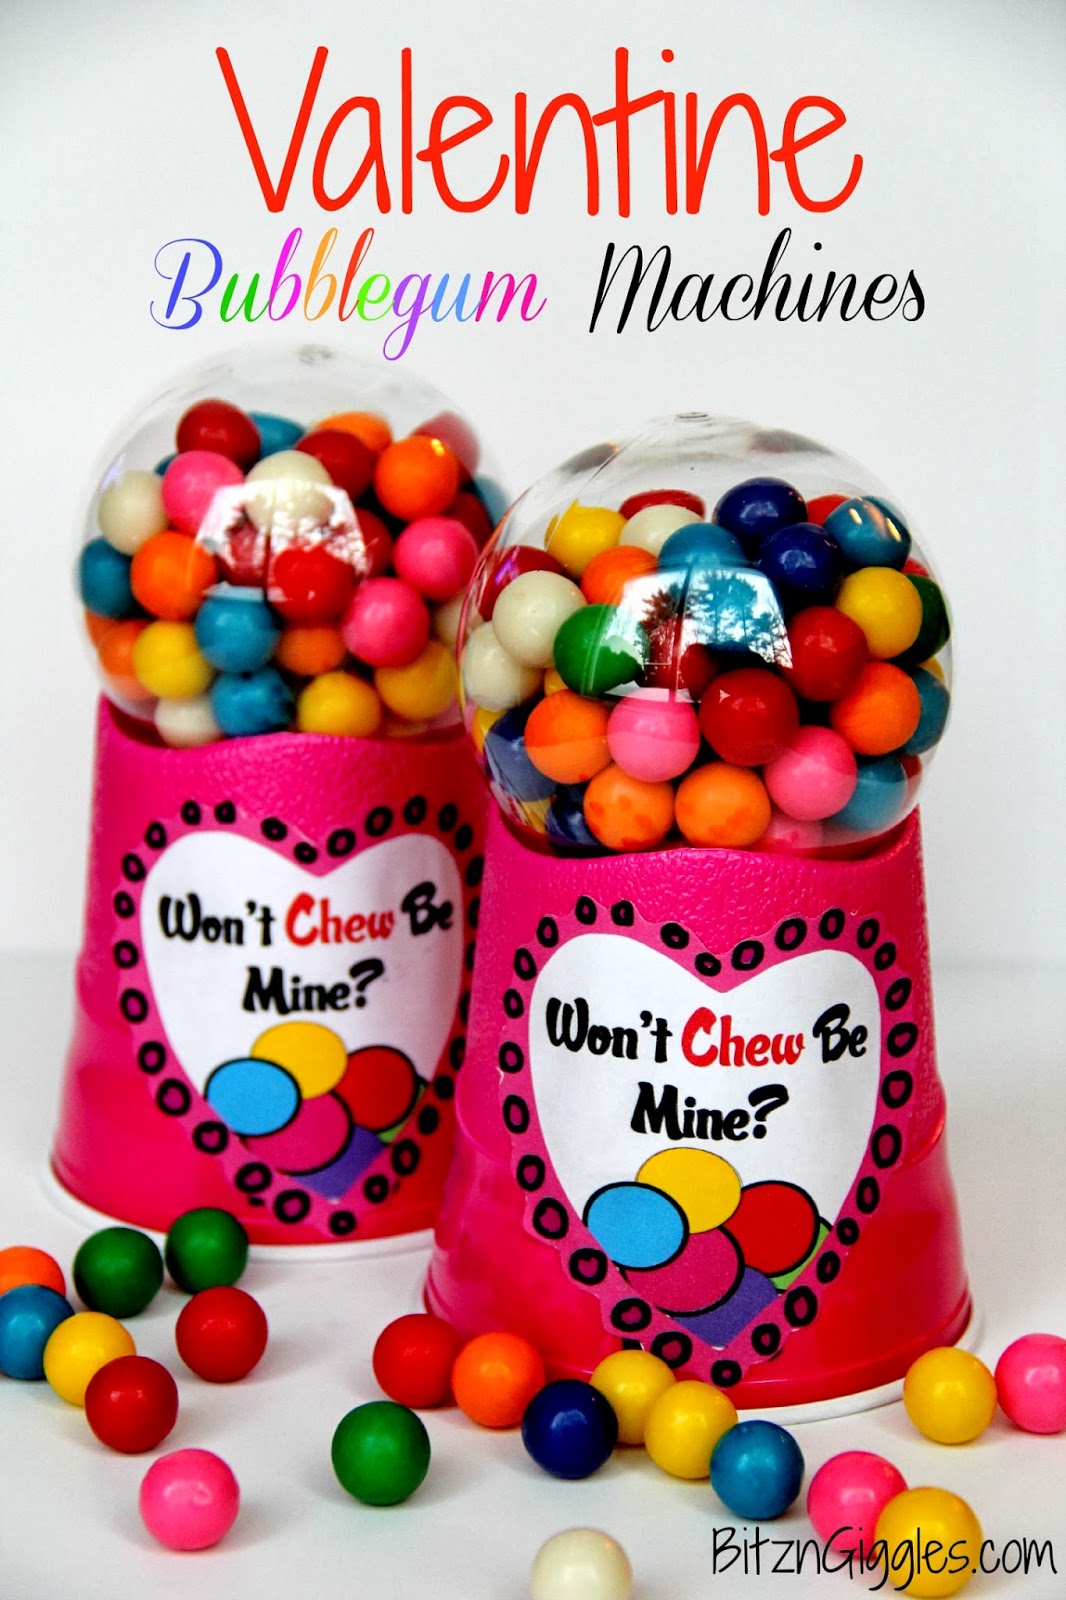 https://www.bitzngiggles.com/2014/01/valentine-bubblegum-machines.html